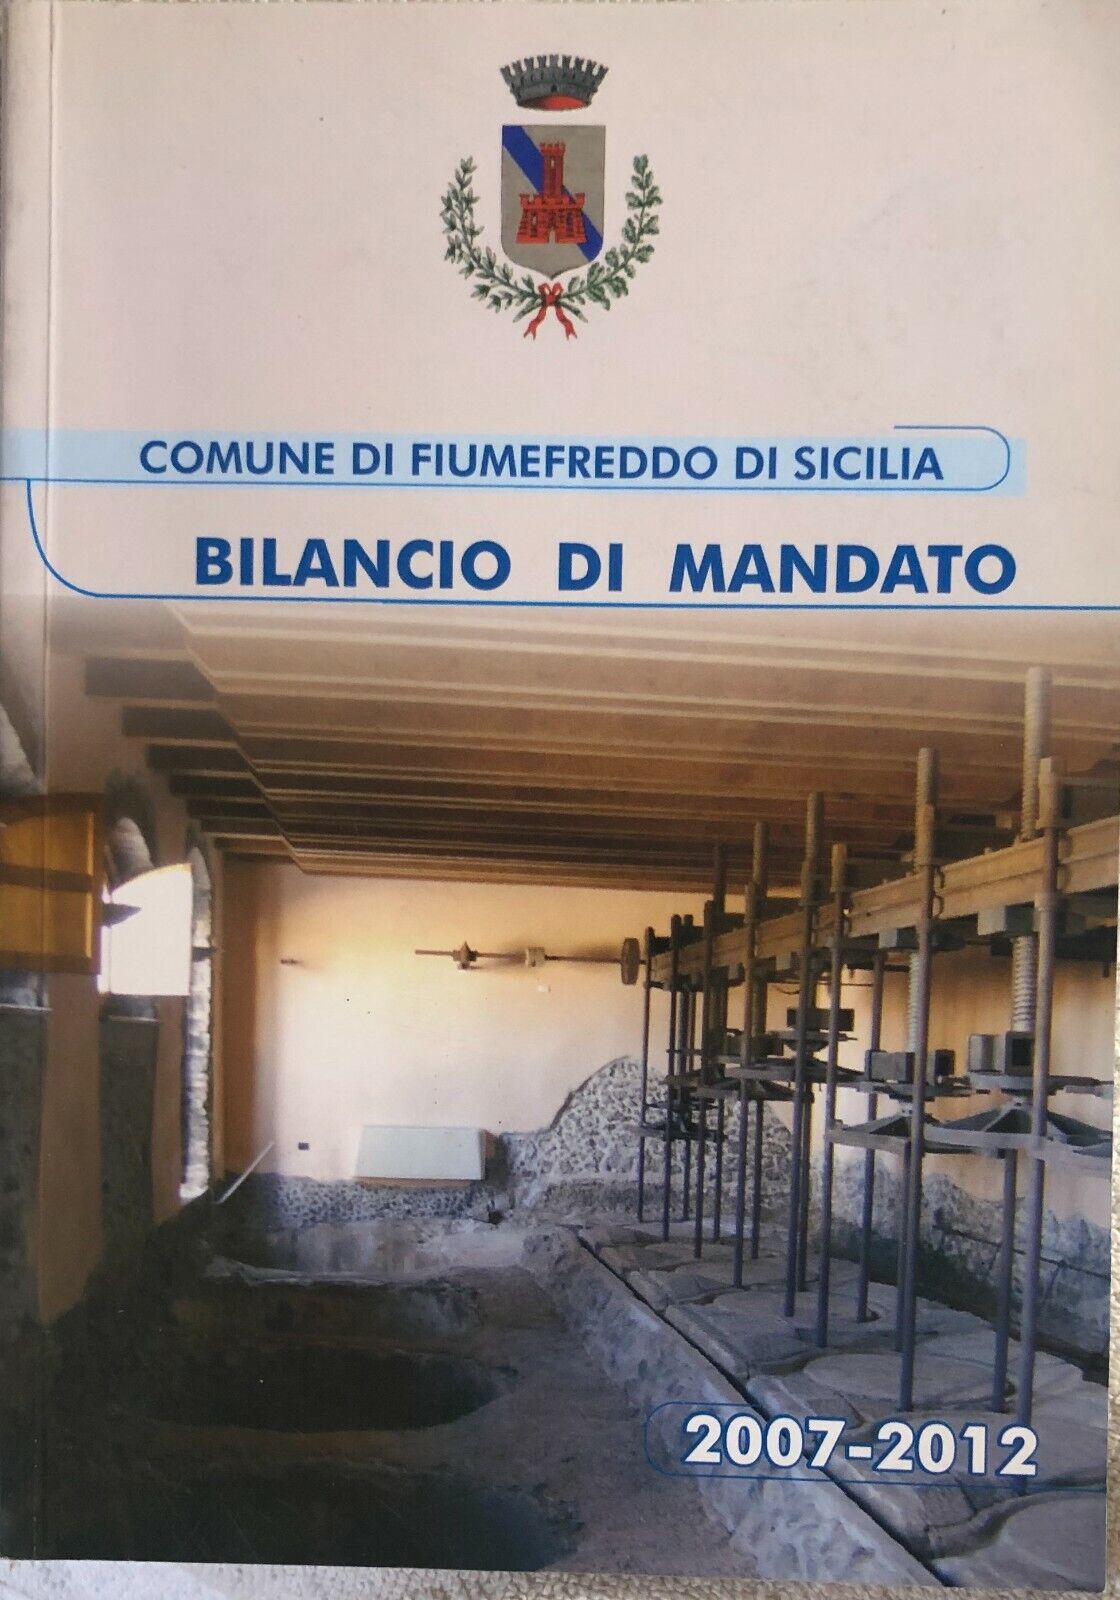 Bilancio di mandato Fiumefreddo di Sicilia 2007-2012 di Aa.vv.,  2012,  Comune D